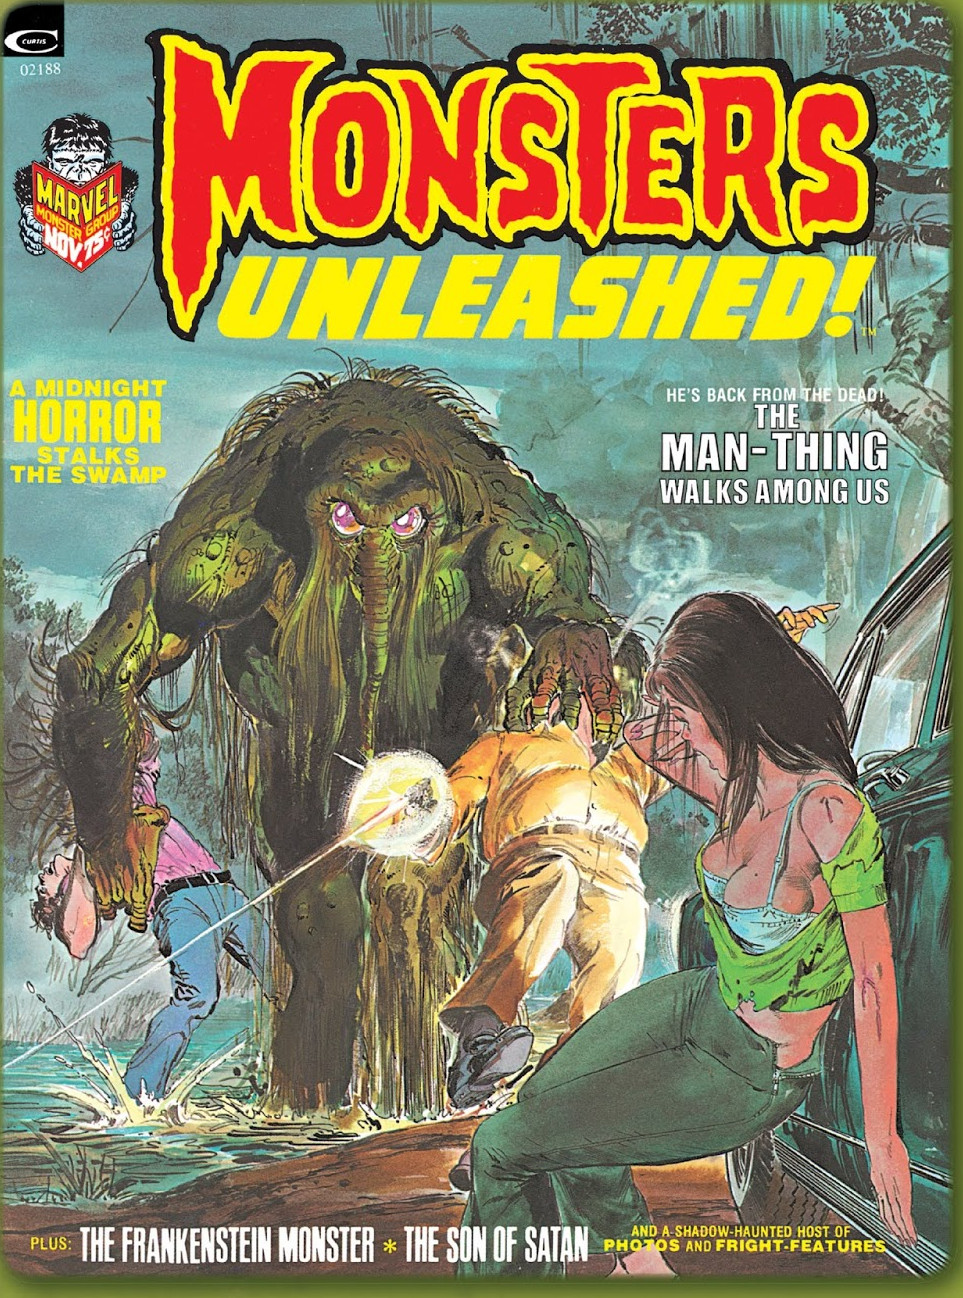 Suspense Horror Stories Comic Vol 2: Monster Stalks Your